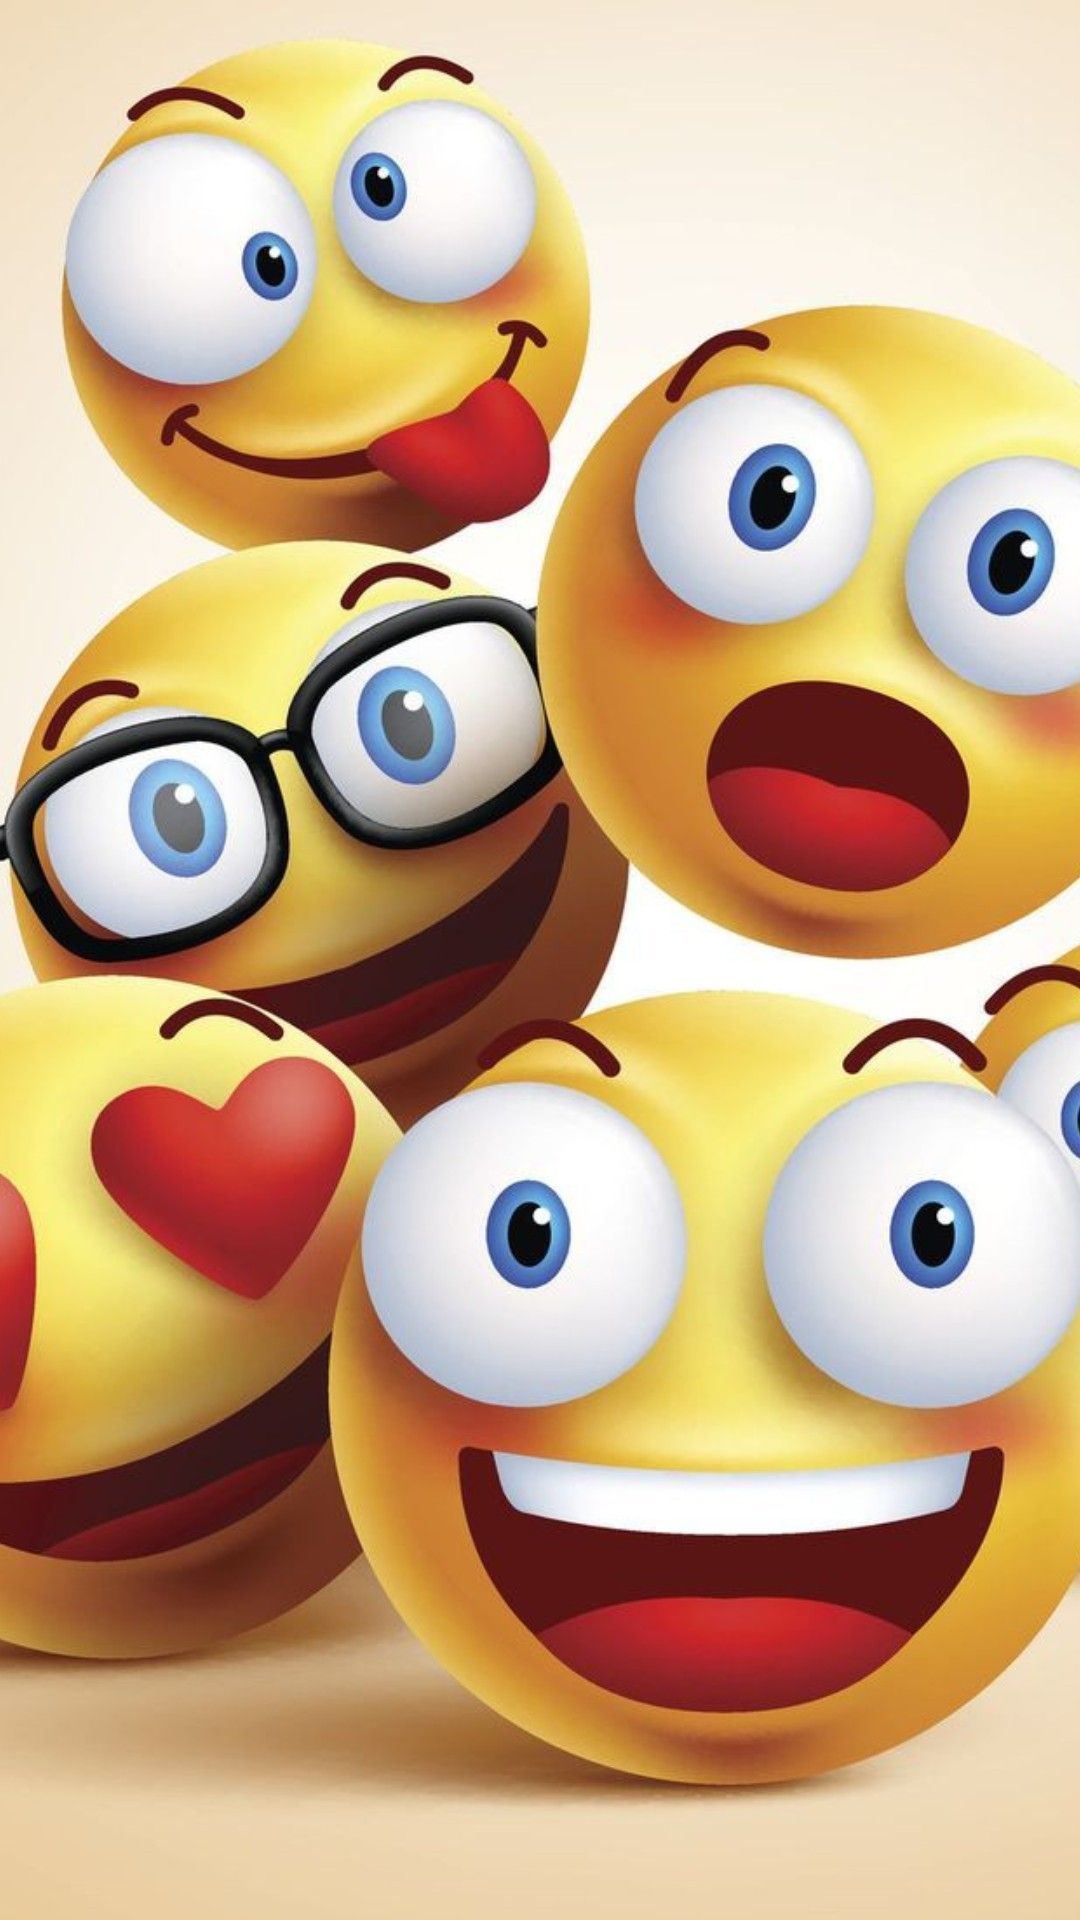 23+] Emoji Backgrounds - WallpaperSafari